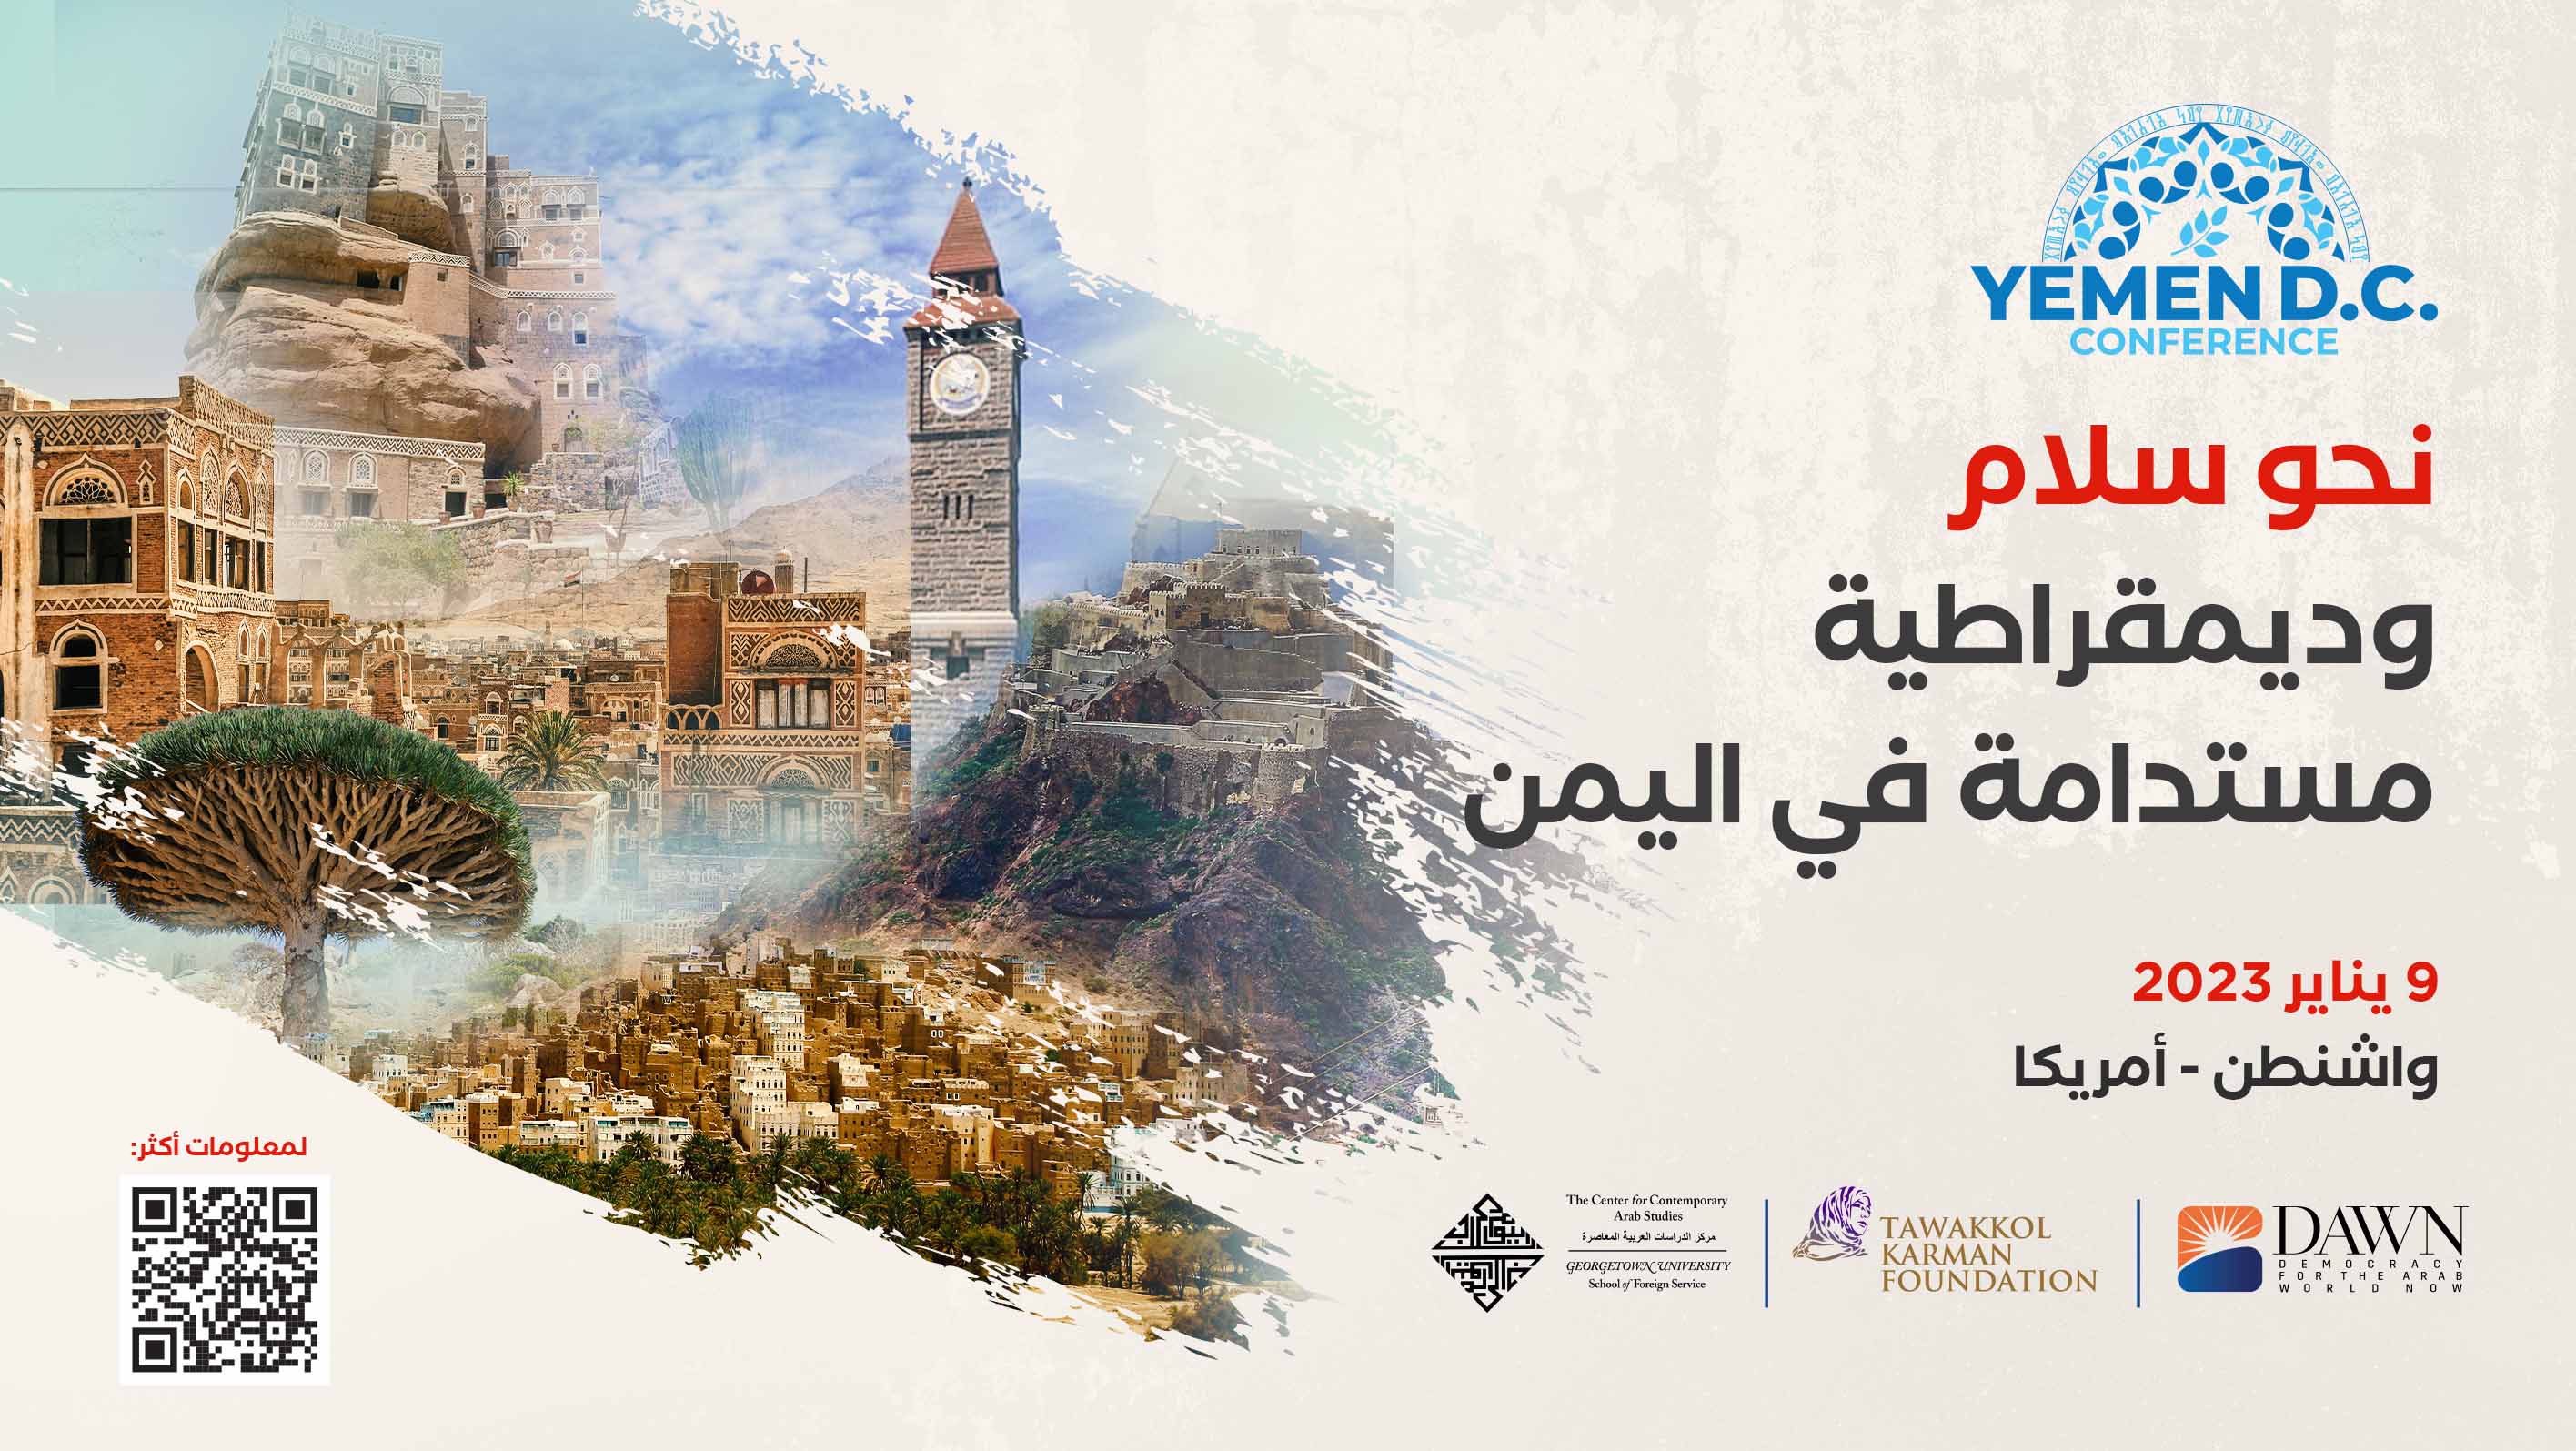 مؤسسة توكل كرمان تنظم مؤتمراً دولياً بعنوان "نحو سلام مستدام وديمقراطية في اليمن"